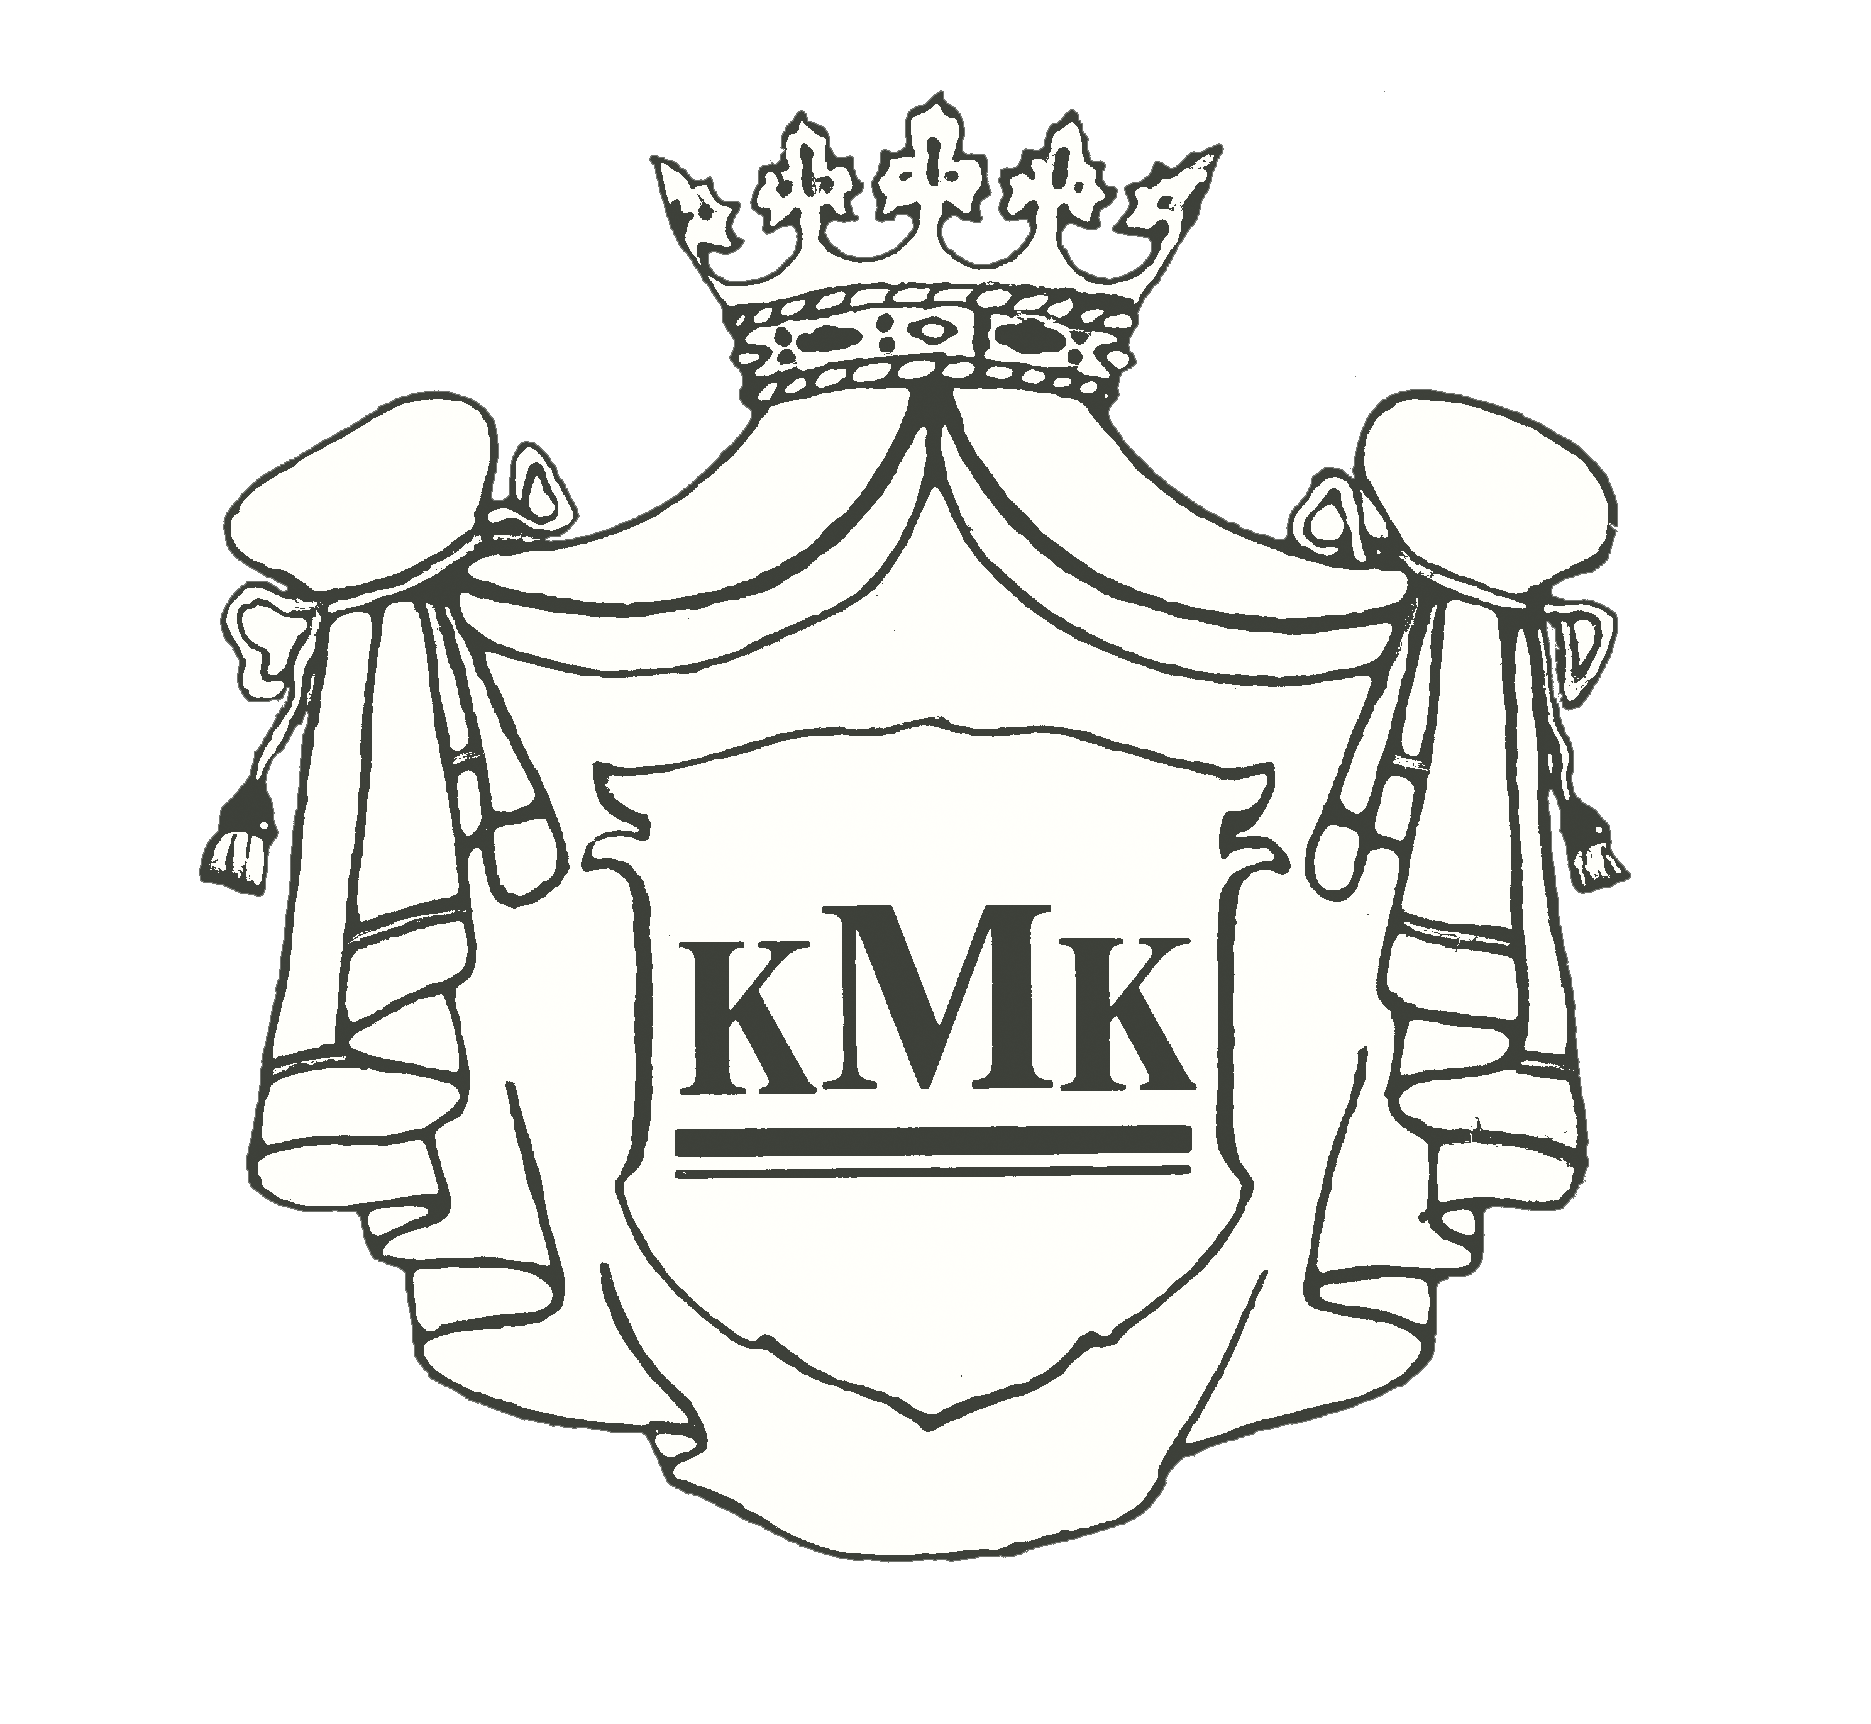 kmk logo